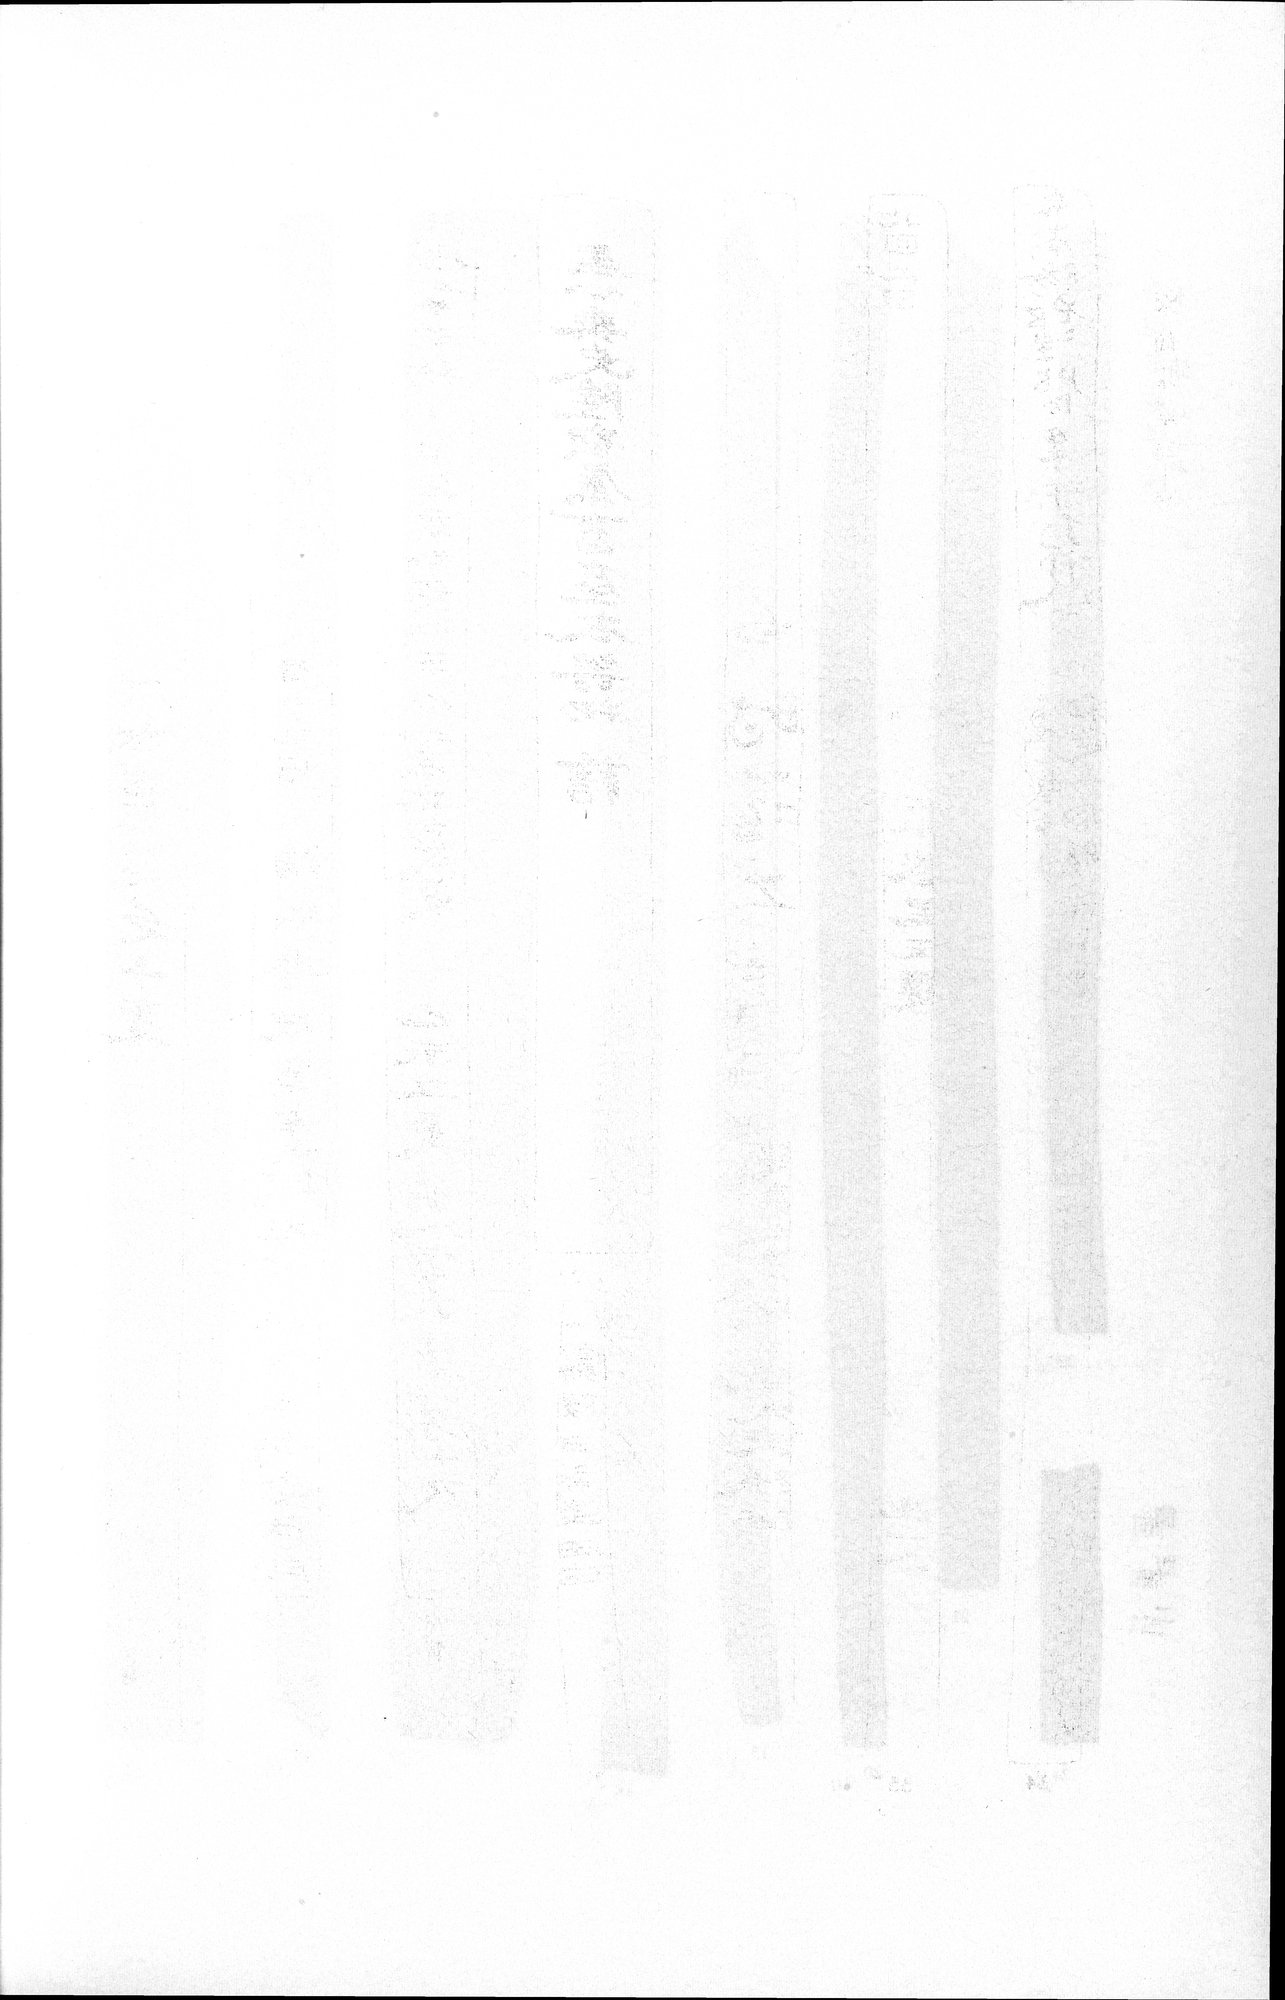 羅布淖爾考古記 : vol.1 / Page 362 (Grayscale High Resolution Image)